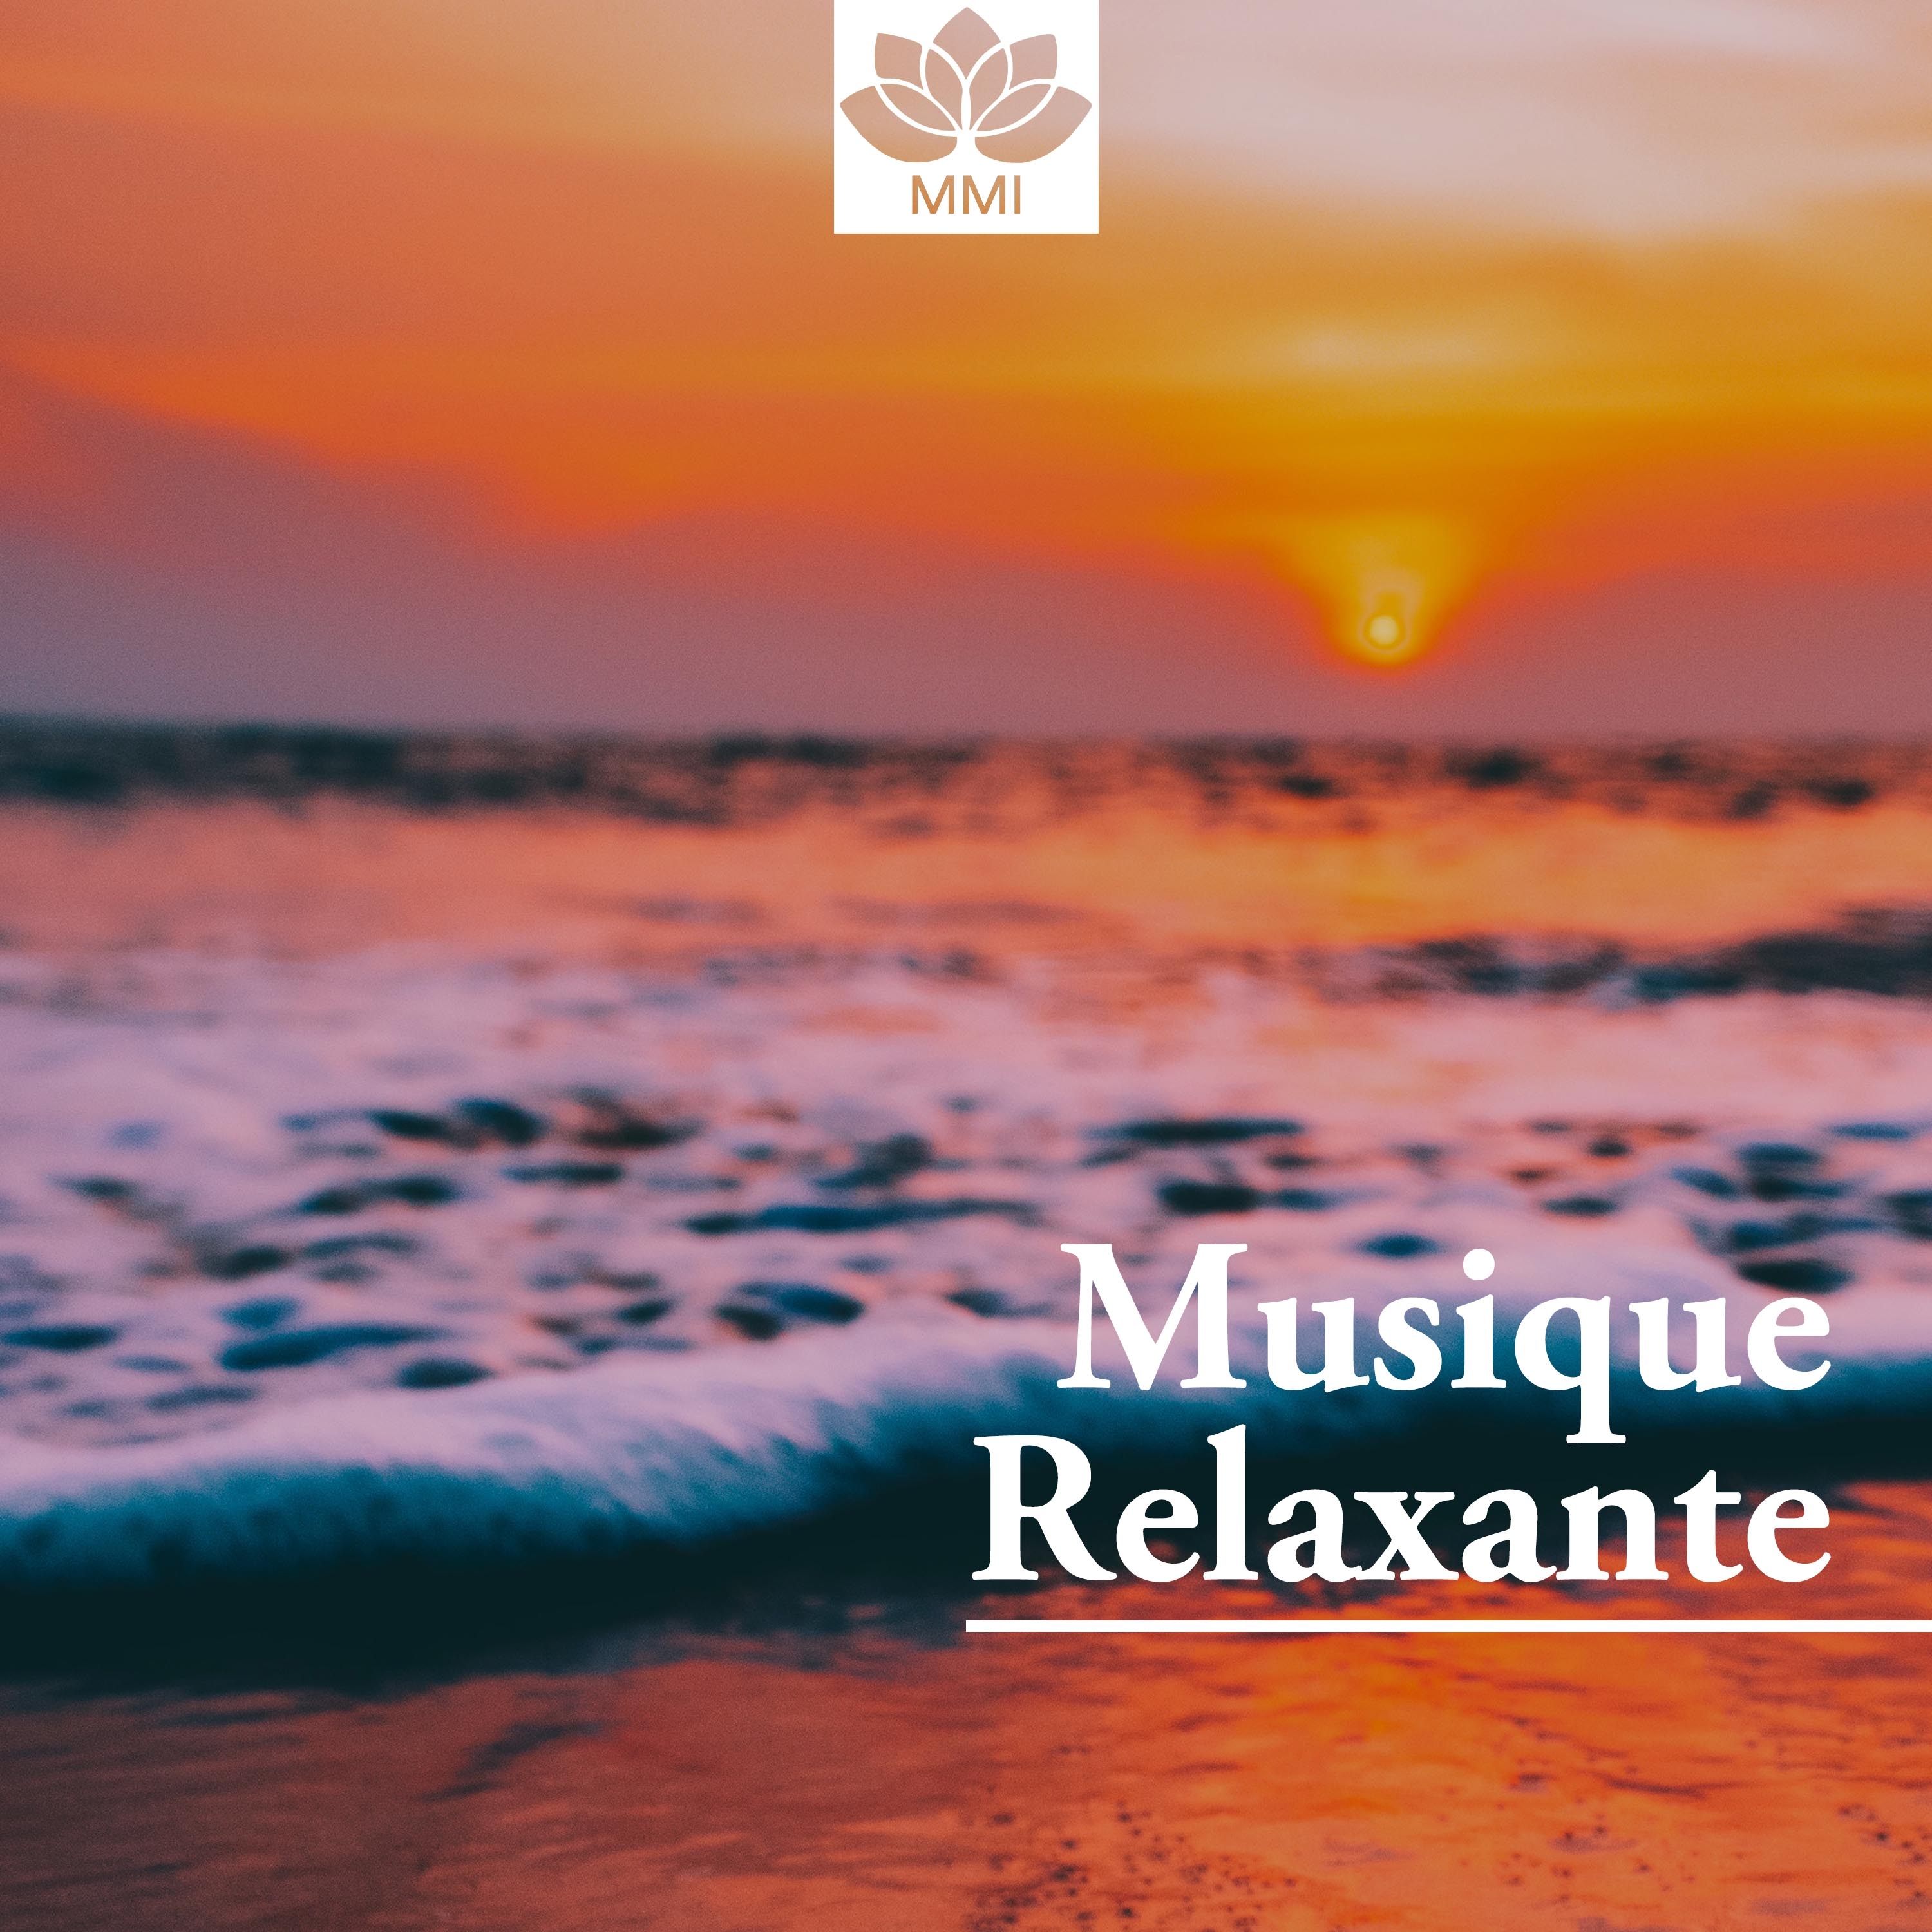 Musique Relaxante - Musique Instrumentale New Age, Musique de Fond, Calmez-Vous